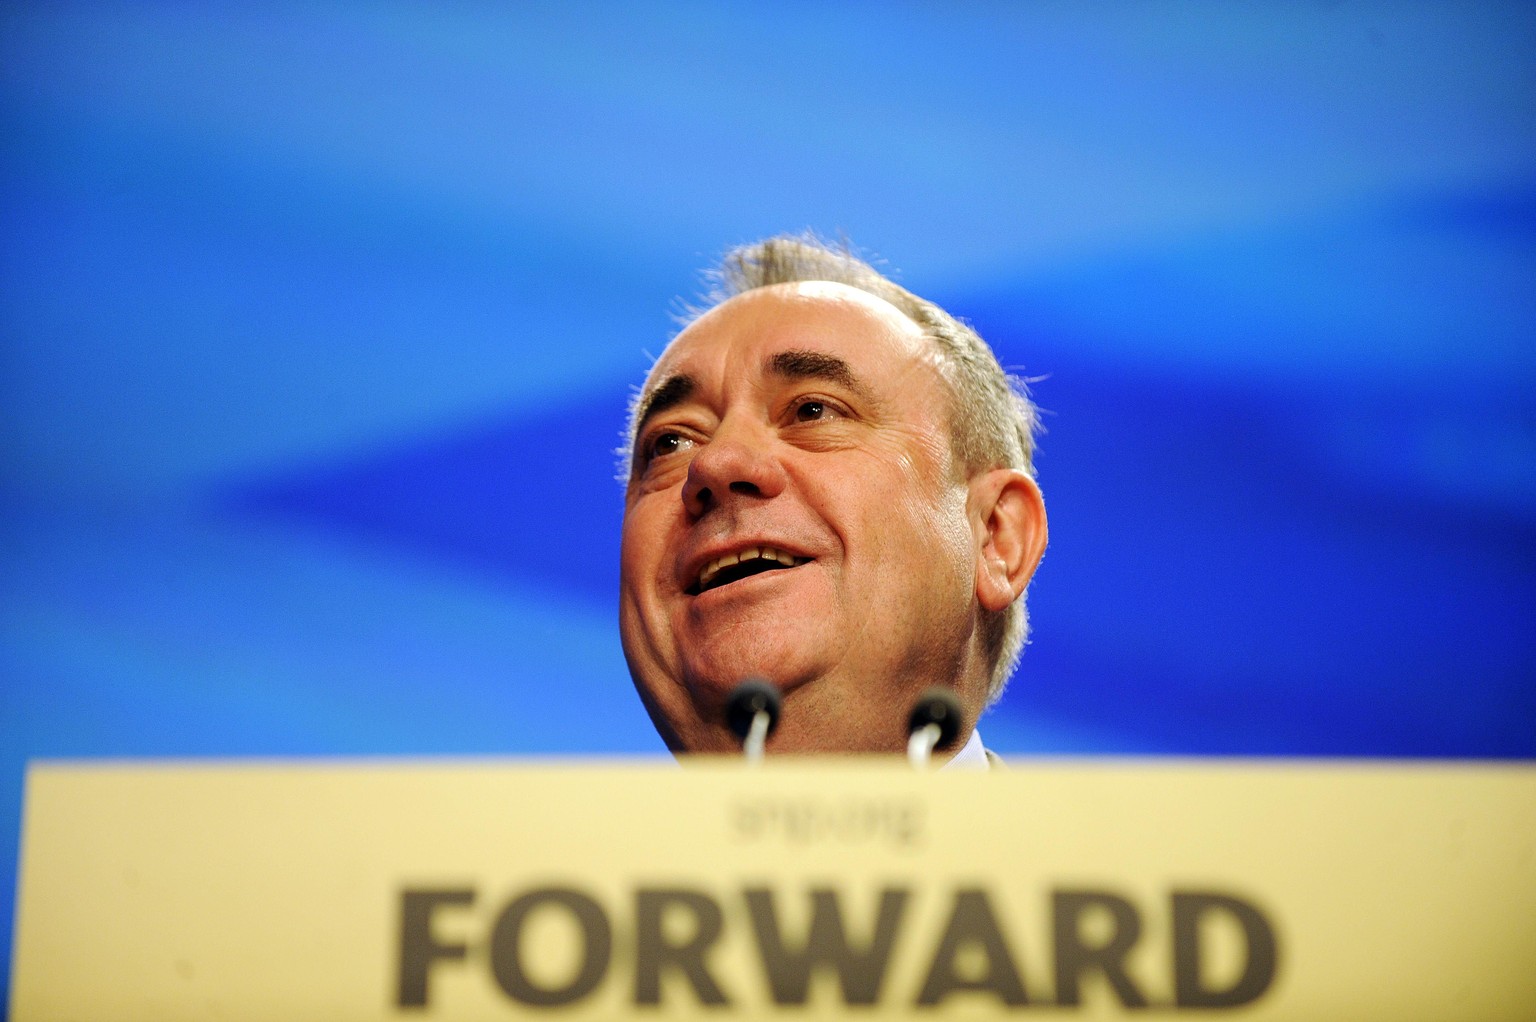 Schottlands Regierungschef Alex Salmond spricht an einer Wahlveranstaltung seiner Partei, der Scottish National Party (SNP).